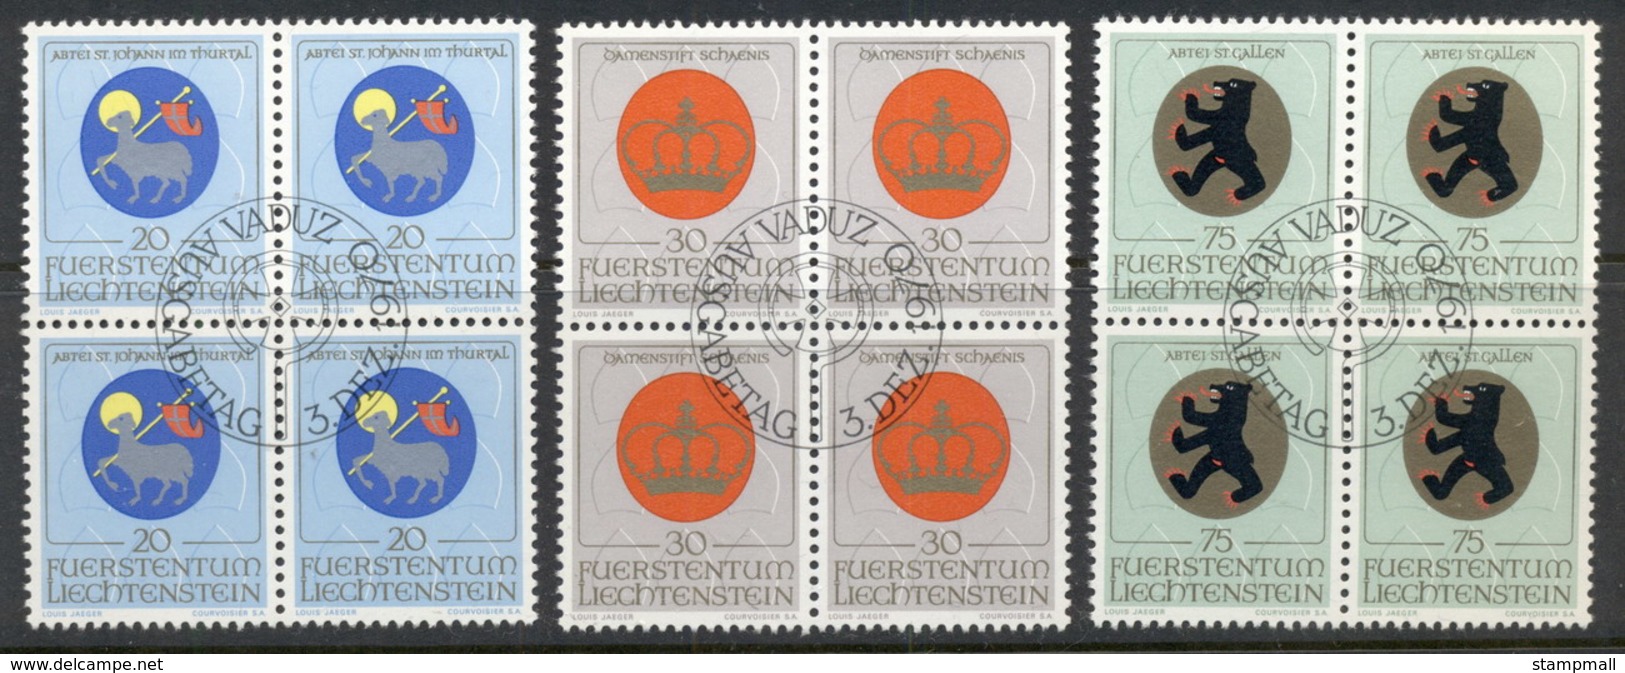 Liechtenstein 1970 Arms Blk4 CTO - Unused Stamps